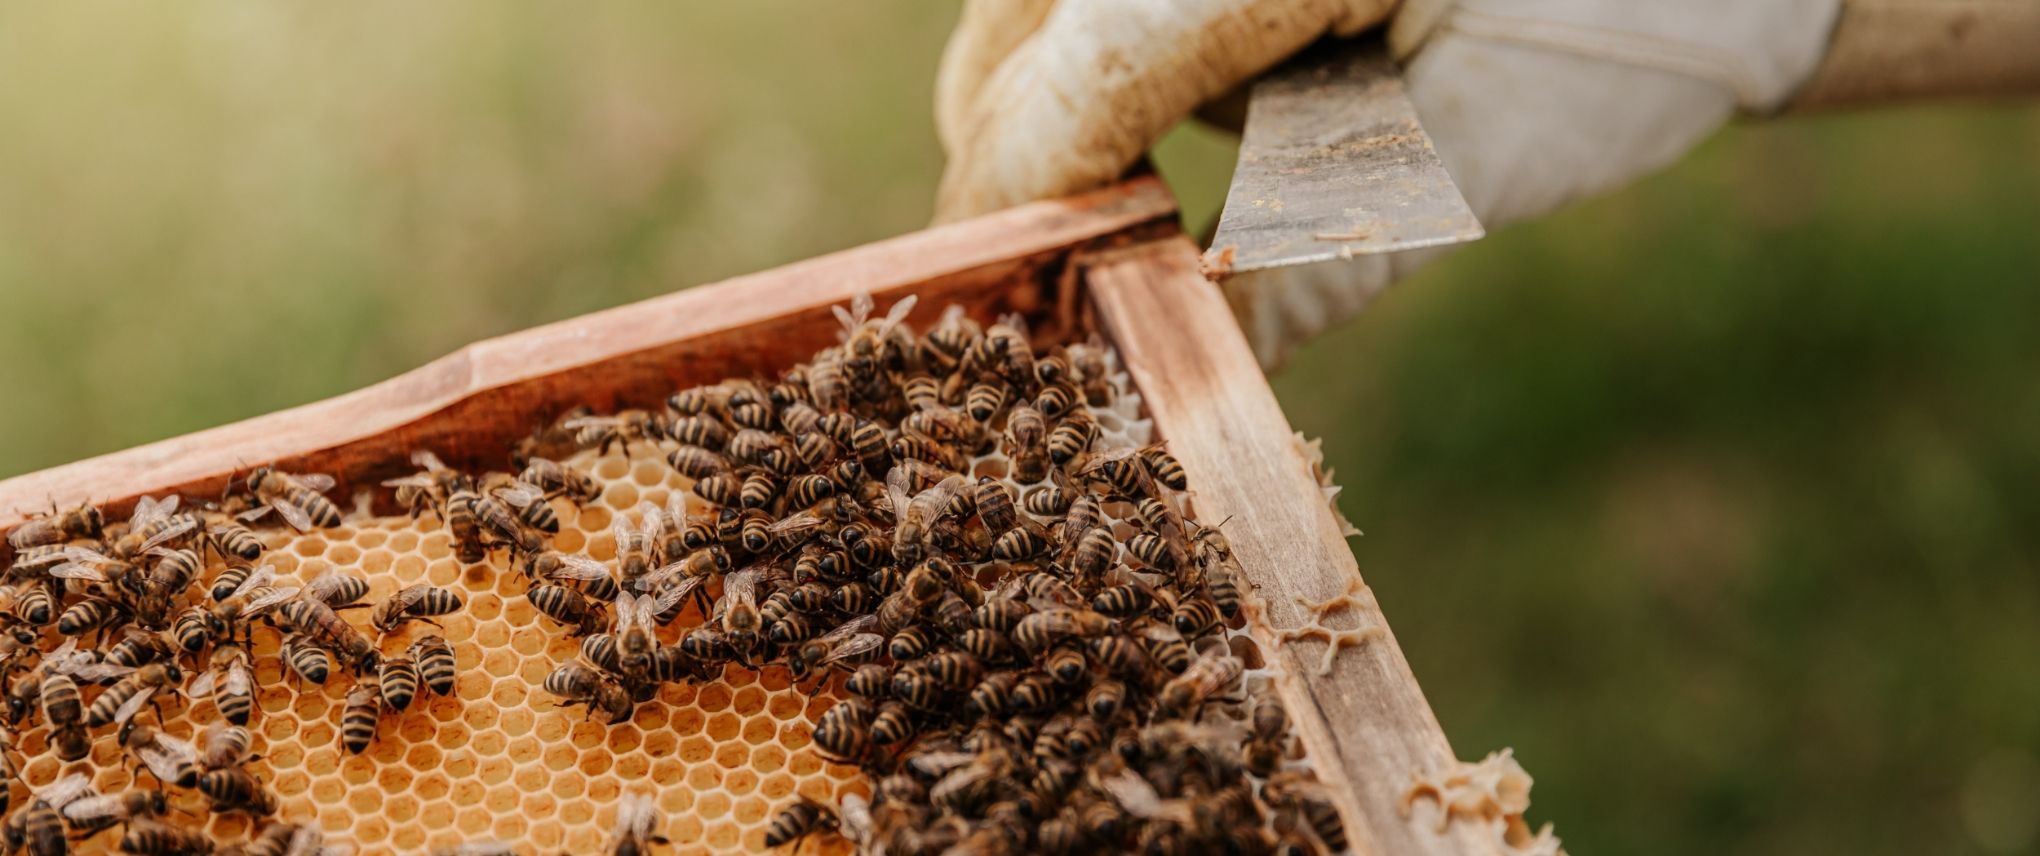 beekeeping-10-0.jpg